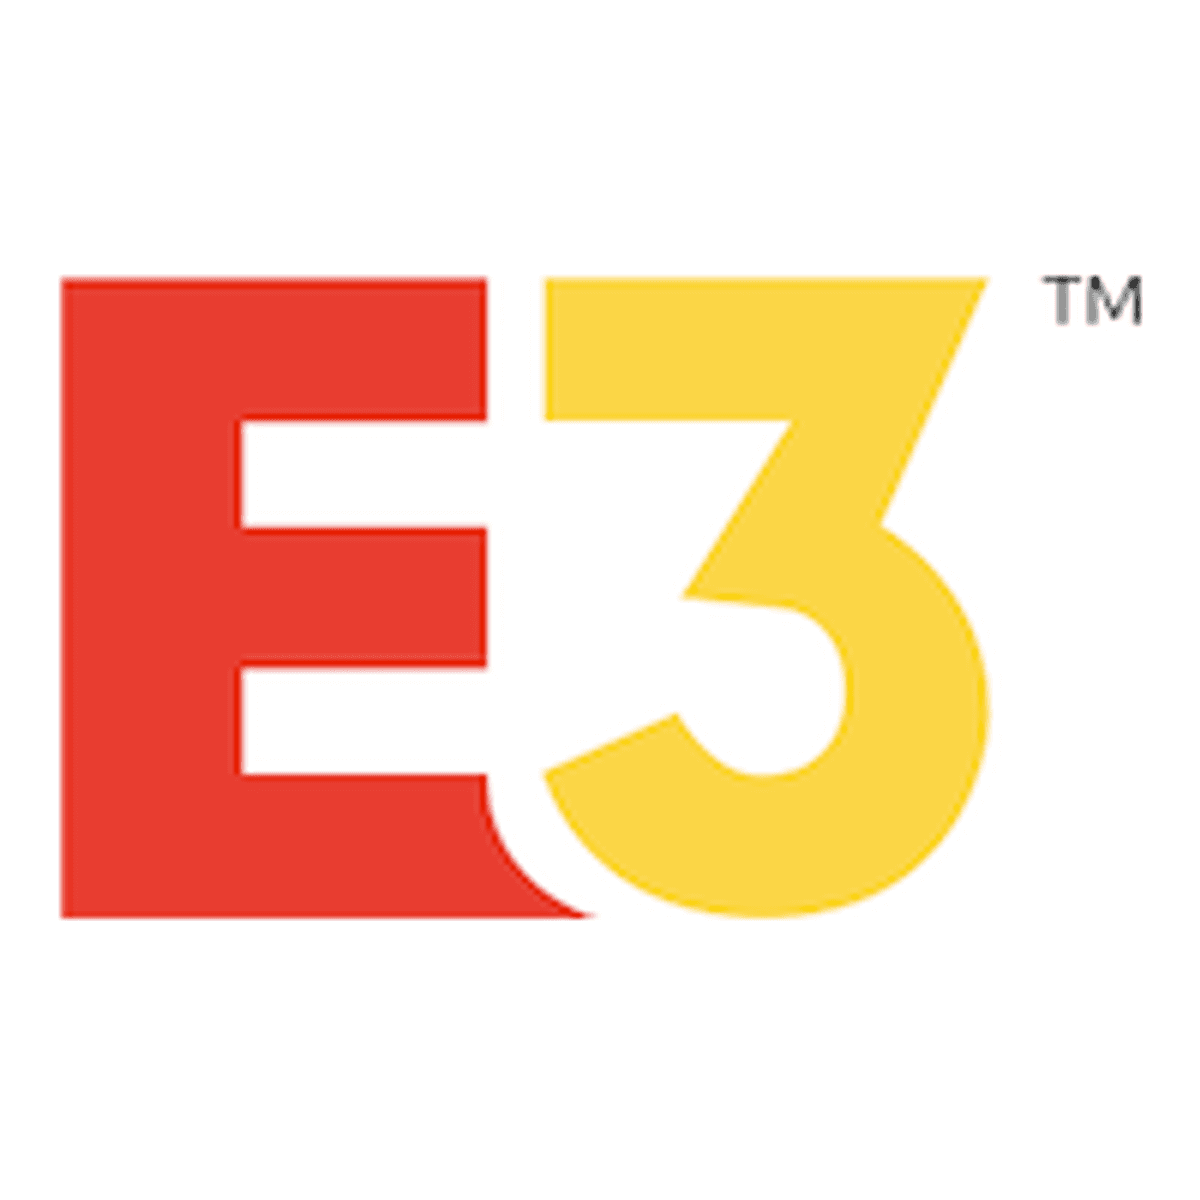 Videogameconferentie E3 mogelijk geannuleerd image